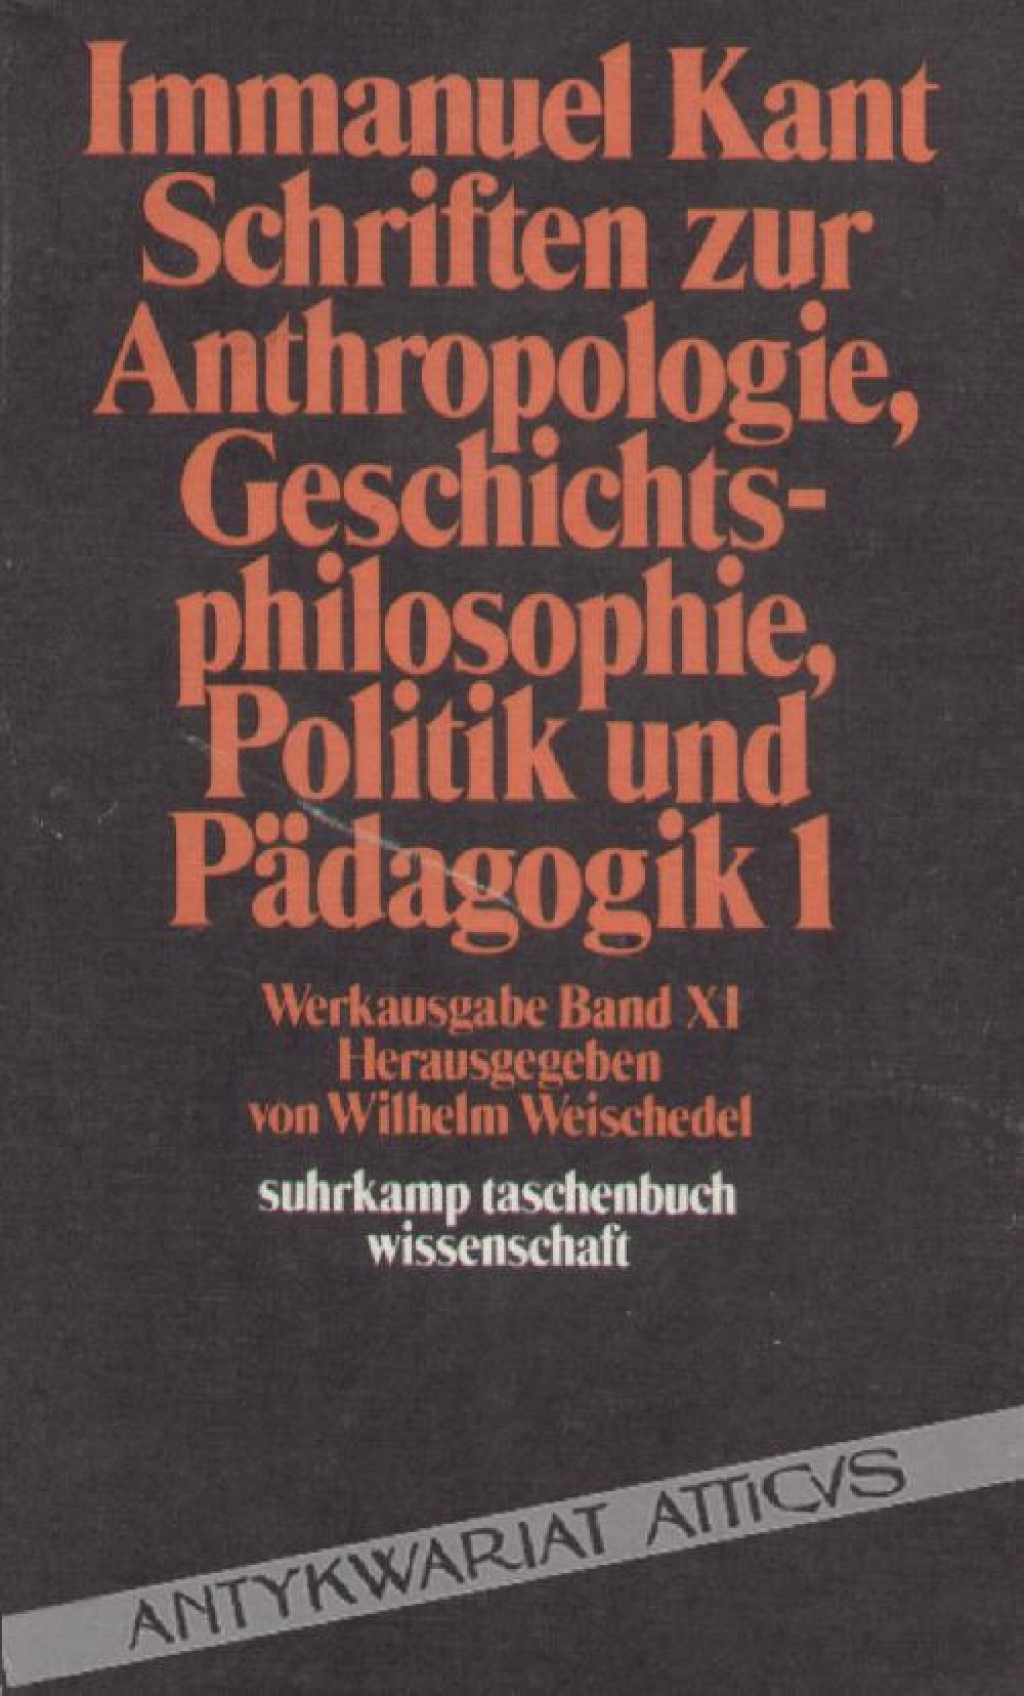 Schriften zur Anthropologie, Geschichts-philosophie, Politik und Pedagogik 1., Werkausgabe Band XI.